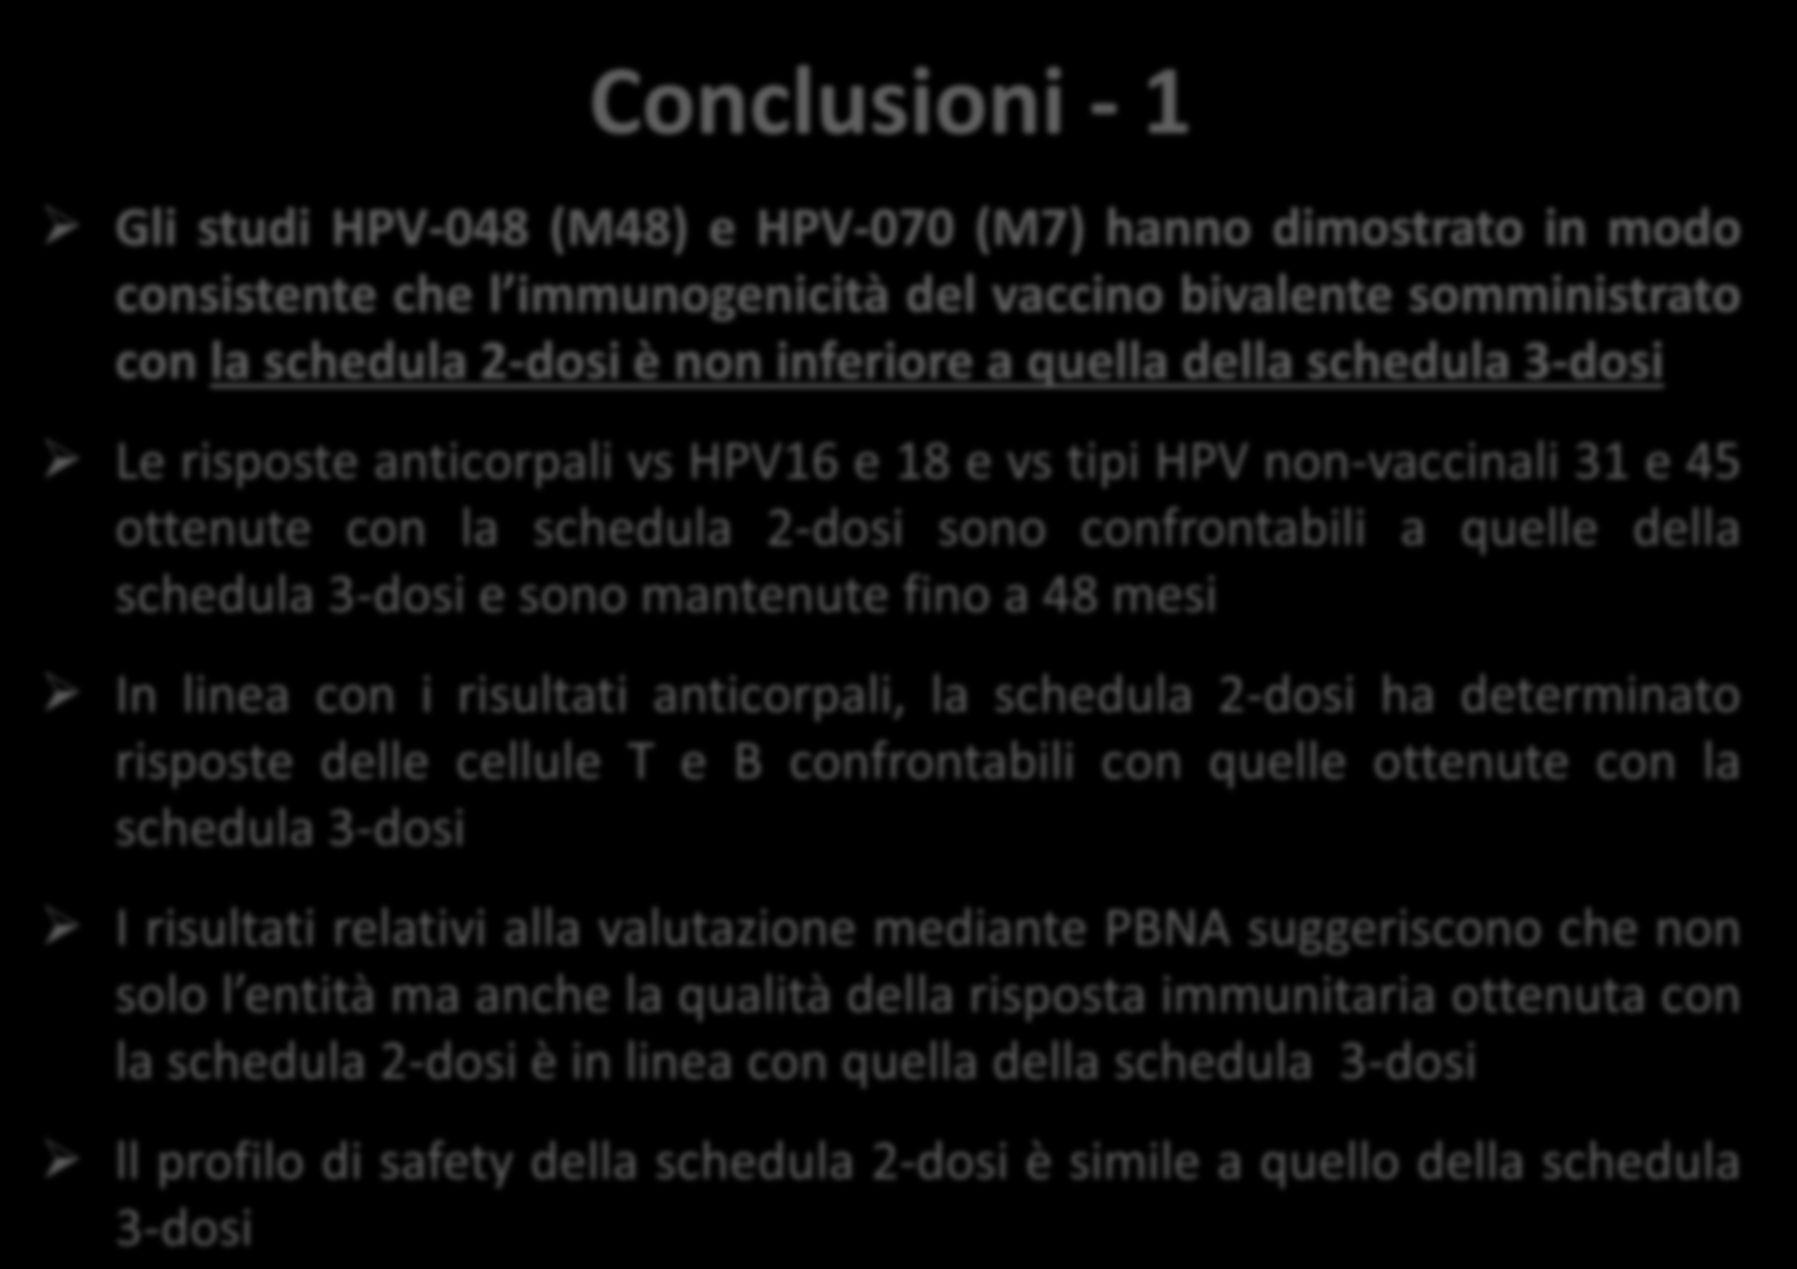 Conclusioni - 1 Gli studi HPV-048 (M48) e HPV-070 (M7) hanno dimostrato in modo consistente che l immunogenicità del vaccino bivalente somministrato con la schedula 2-dosi è non inferiore a quella